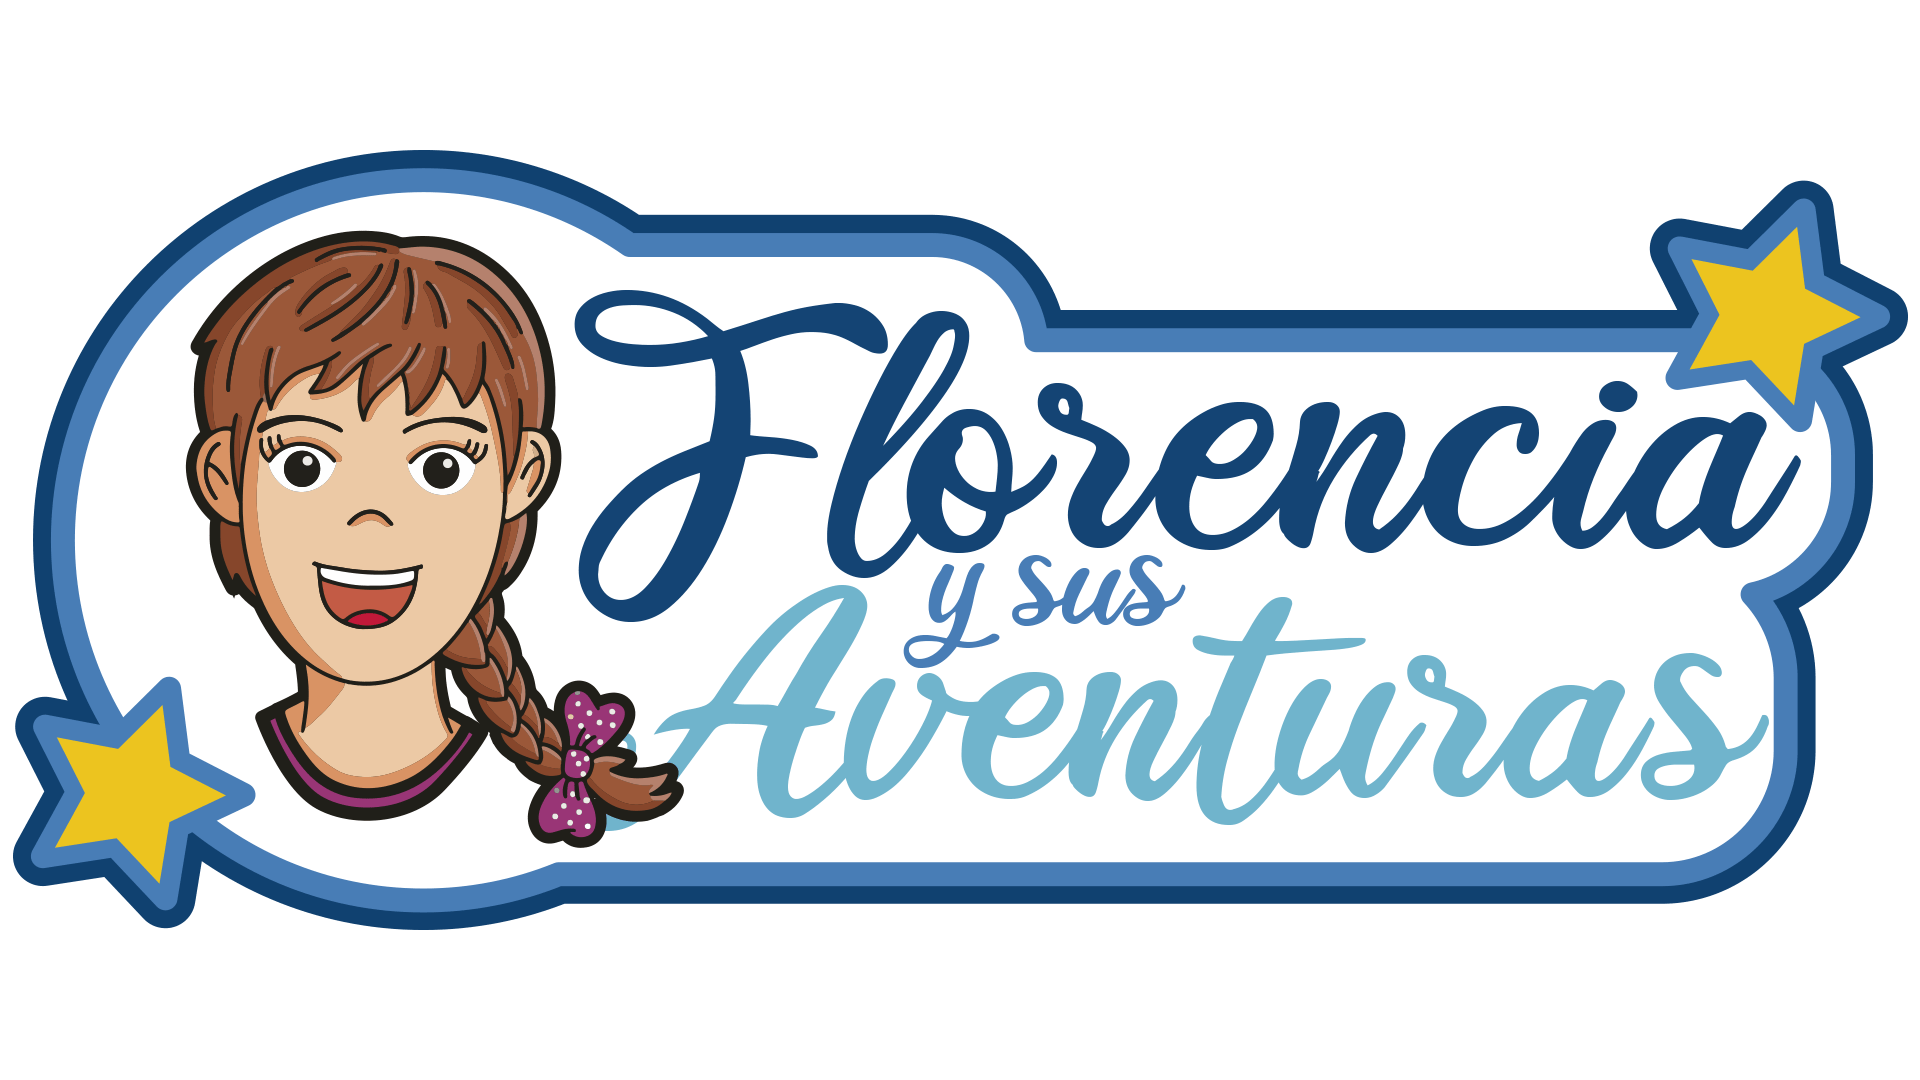 Florencia y sus aventuras